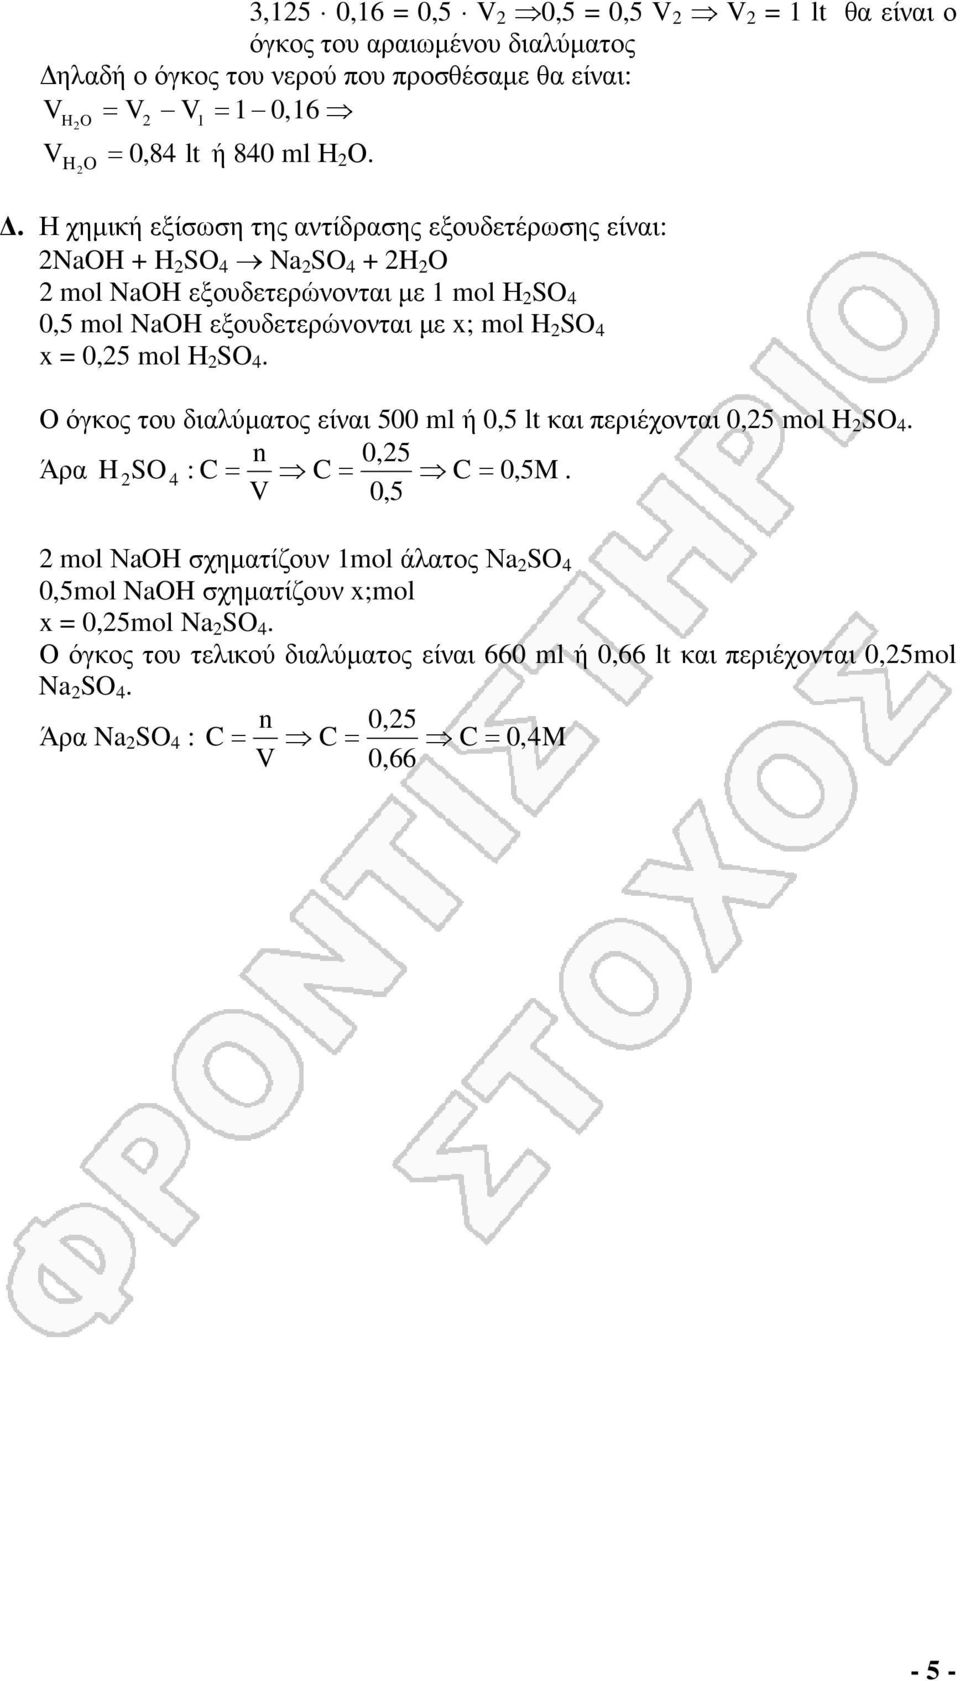 . Η χηµική εξίσωση της αντίδρασης εξουδετέρωσης είναι: 2NaOH + H 2 SO 4 Na 2 SO 4 + 2H 2 O 2 mol NaOH εξουδετερώνονται µε 1 mol Η 2 SO 4 0,5 mol NaOH εξουδετερώνονται µε ; mol H 2 SO 4 =